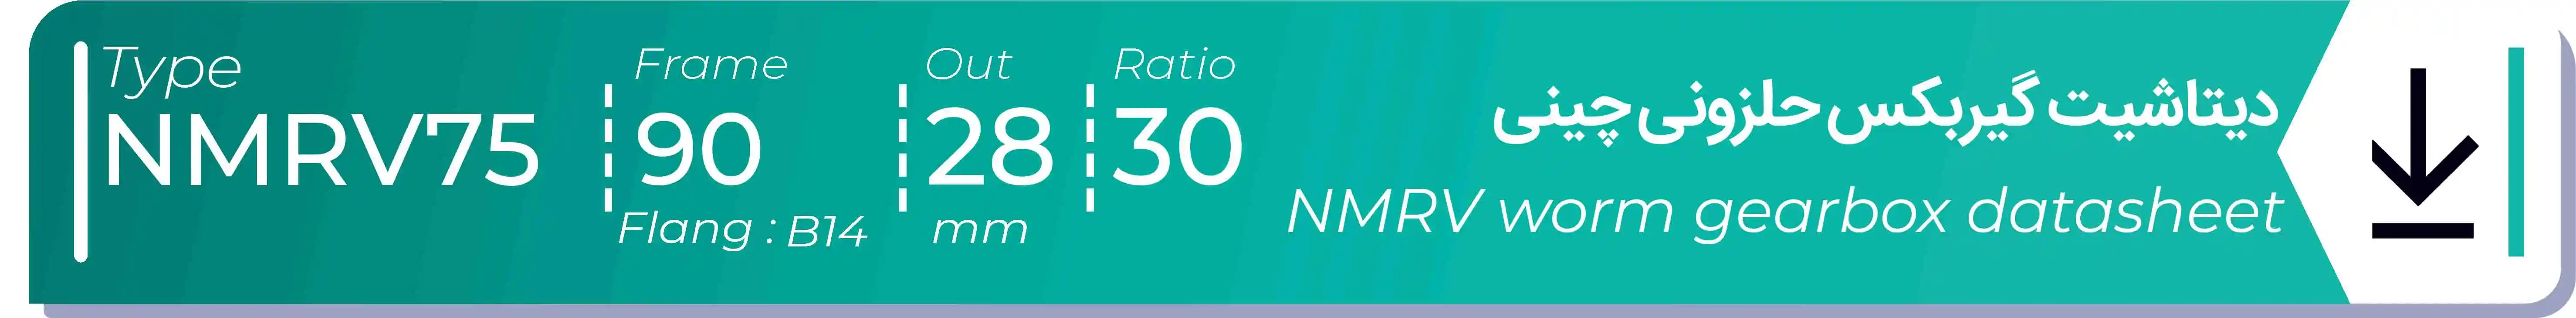  دیتاشیت و مشخصات فنی گیربکس حلزونی چینی   NMRV75  -  با خروجی 28- میلی متر و نسبت30 و فریم 90